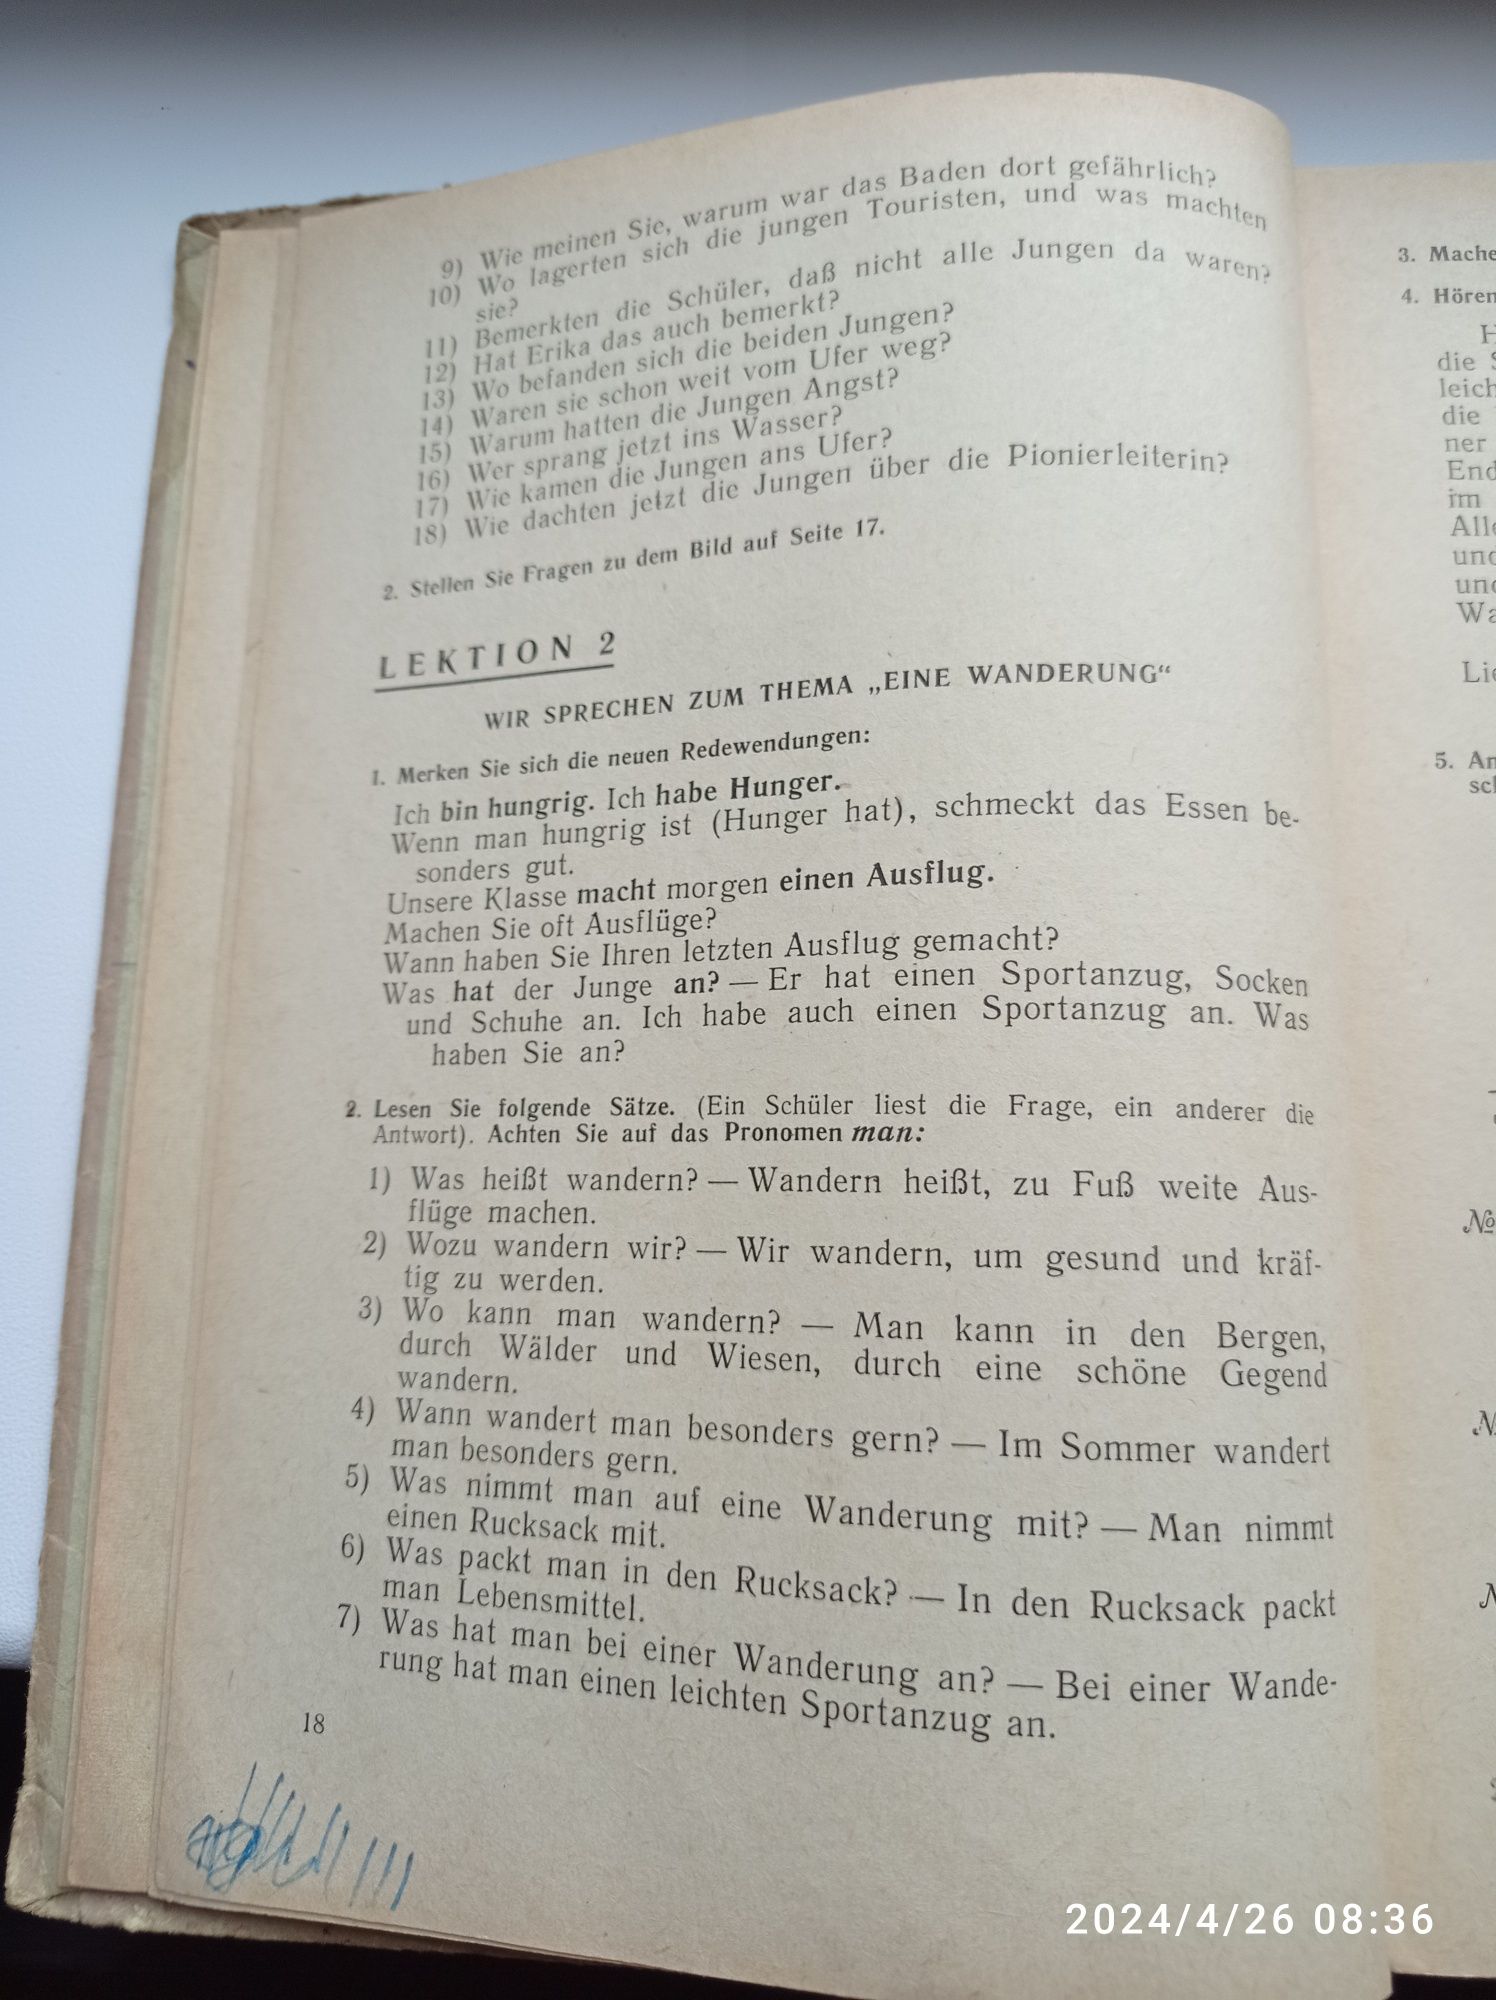 Учебник немецкого языка за 9 класс (1968 года)